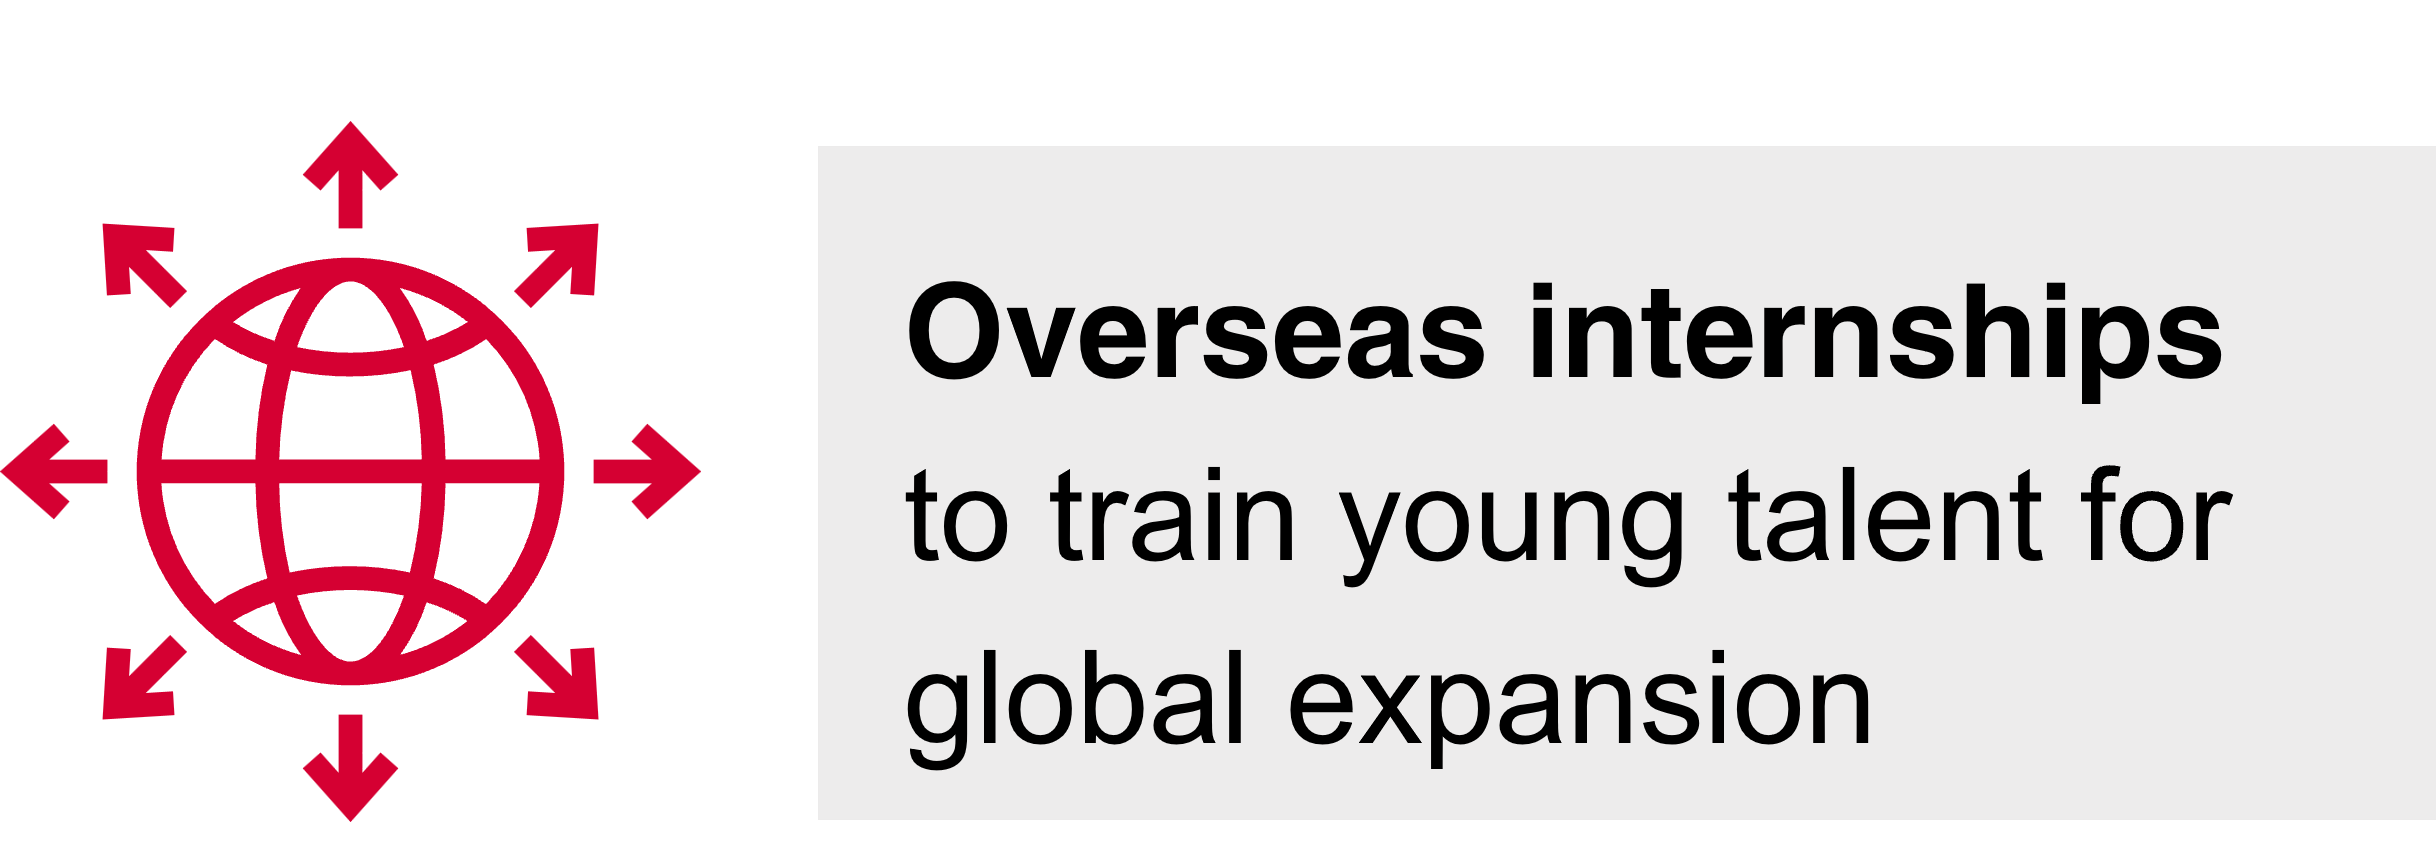 Overseas internships